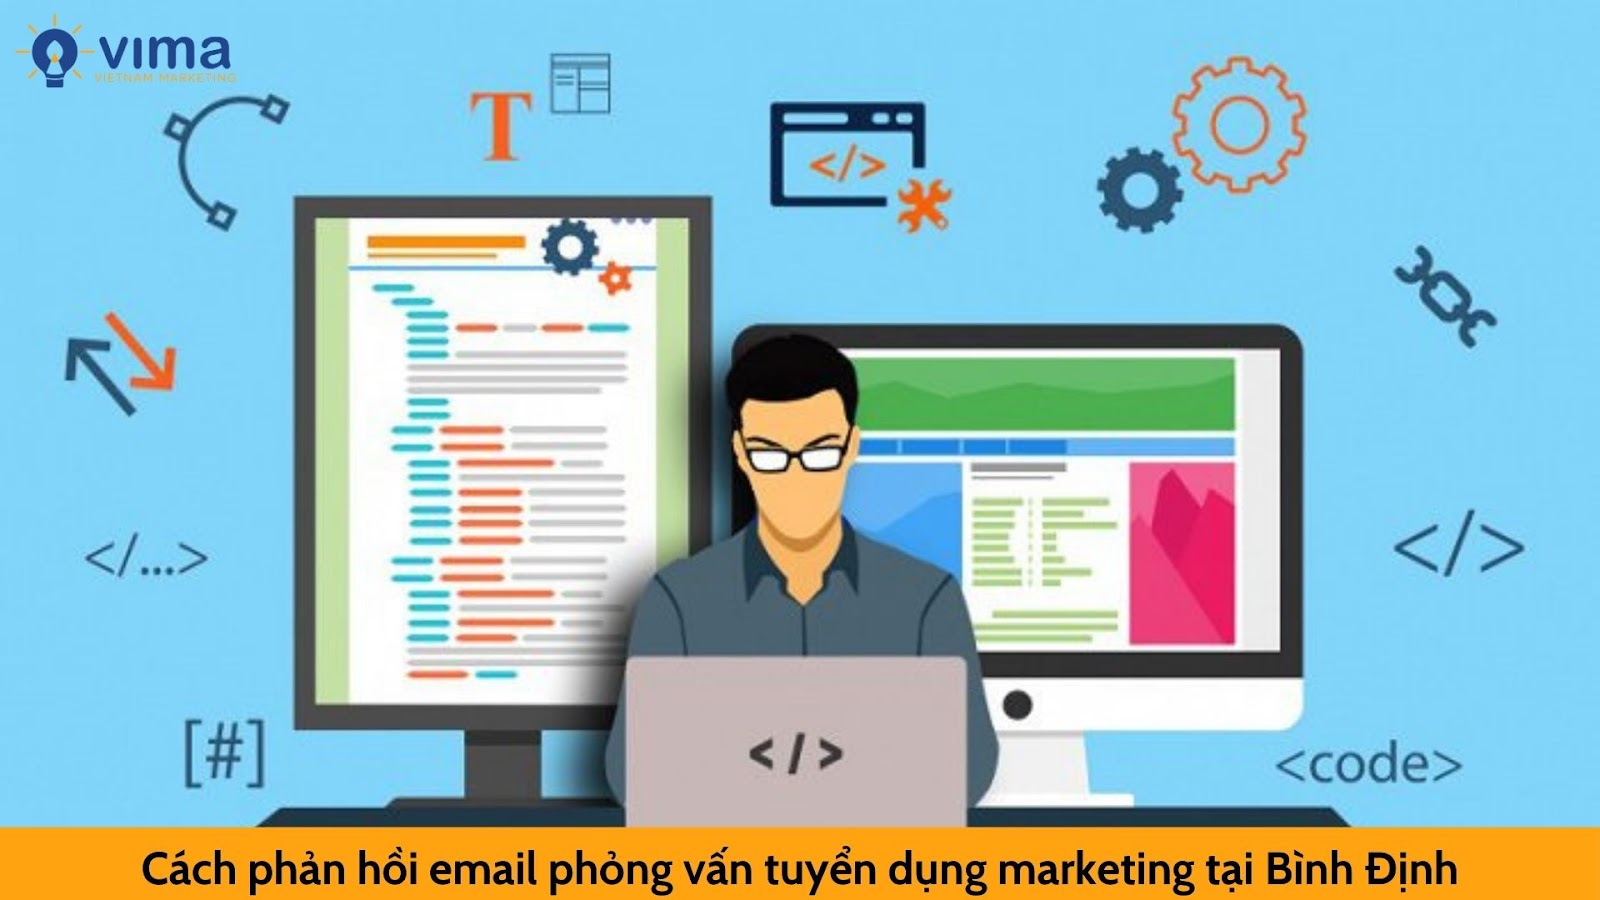 Cách trả lời email gửi nhà tuyển dụng marketing tại Bình Định